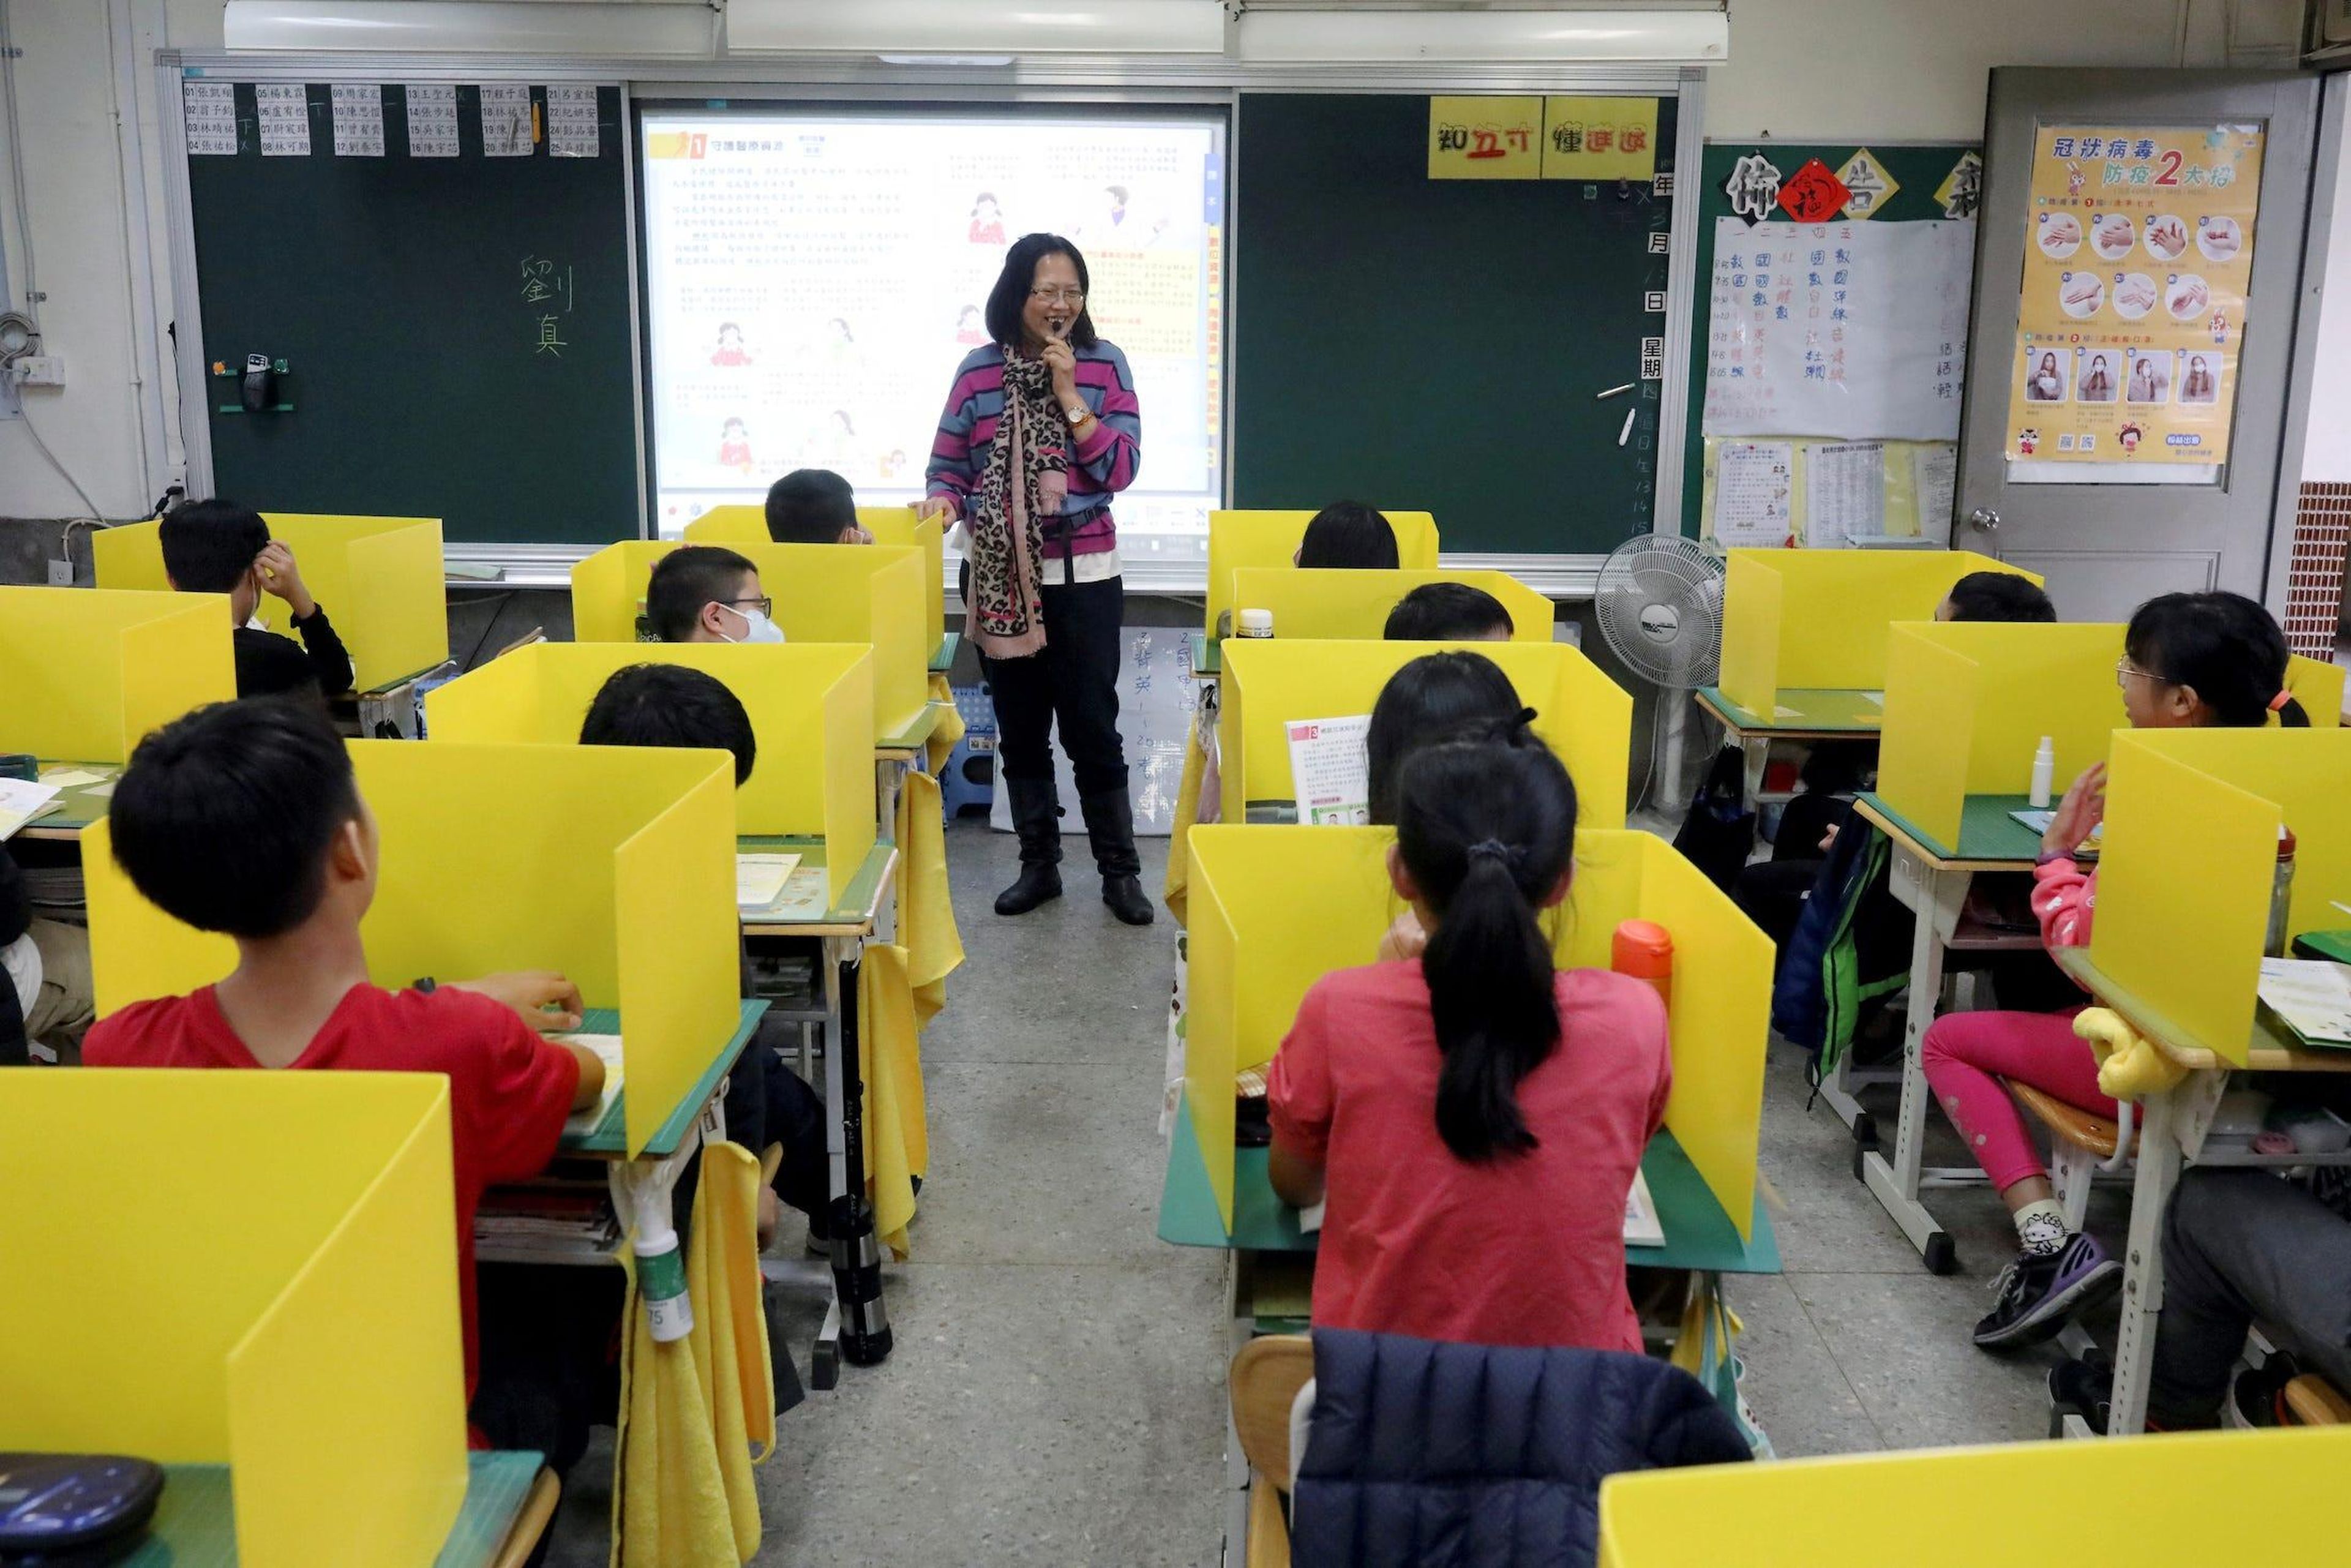 Los alumnos se sientan en escritorios con divisores amarillos, establecidos como medida contra el coronavirus, en la escuela primaria Dajia de Taipei, Taiwán, el 13 de marzo de 2020.